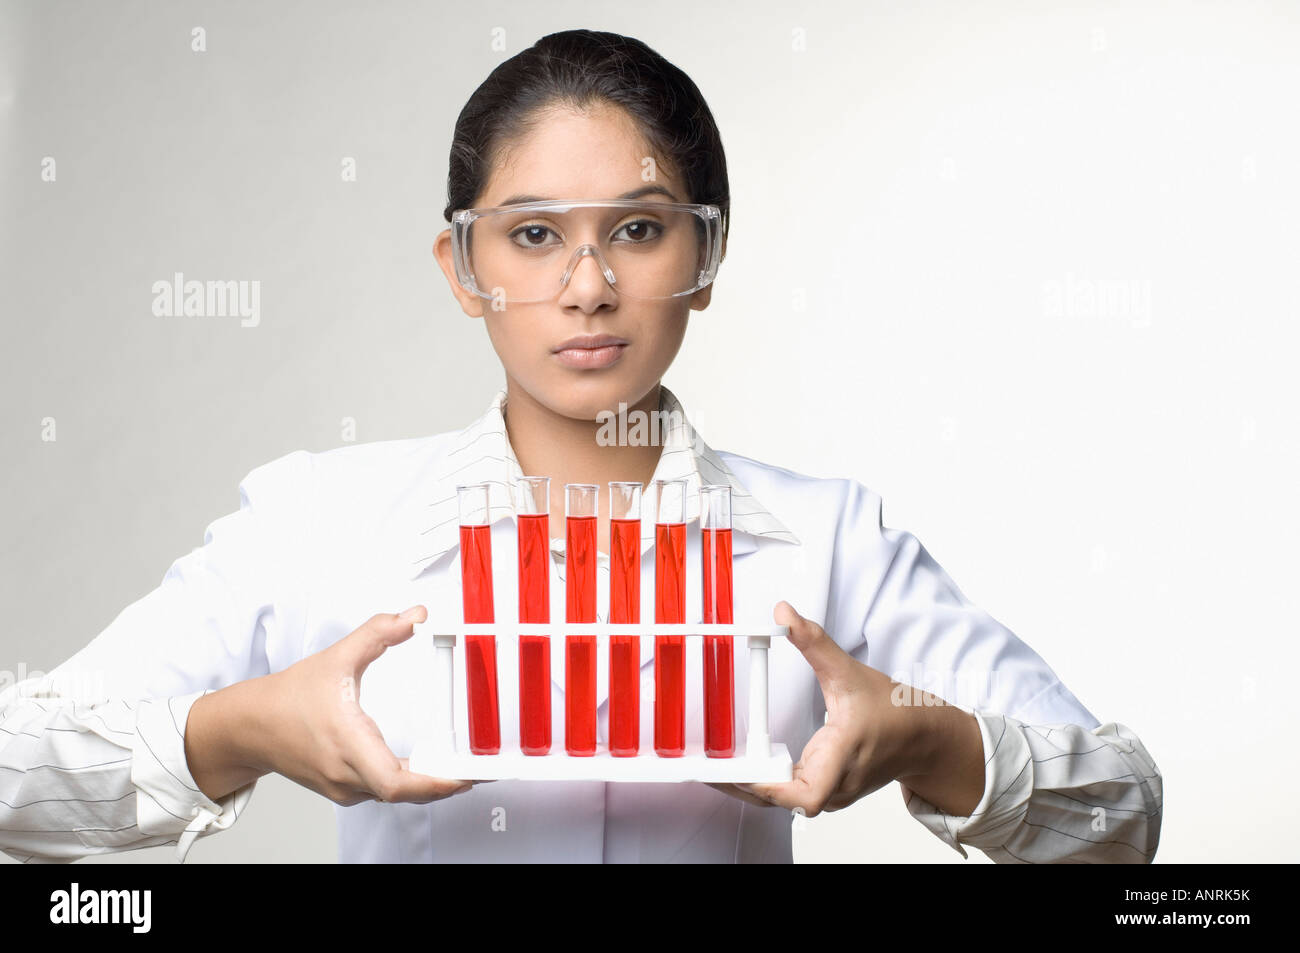 Ritratto di una femmina di tecnico di laboratorio in possesso di un rack per provette Foto Stock